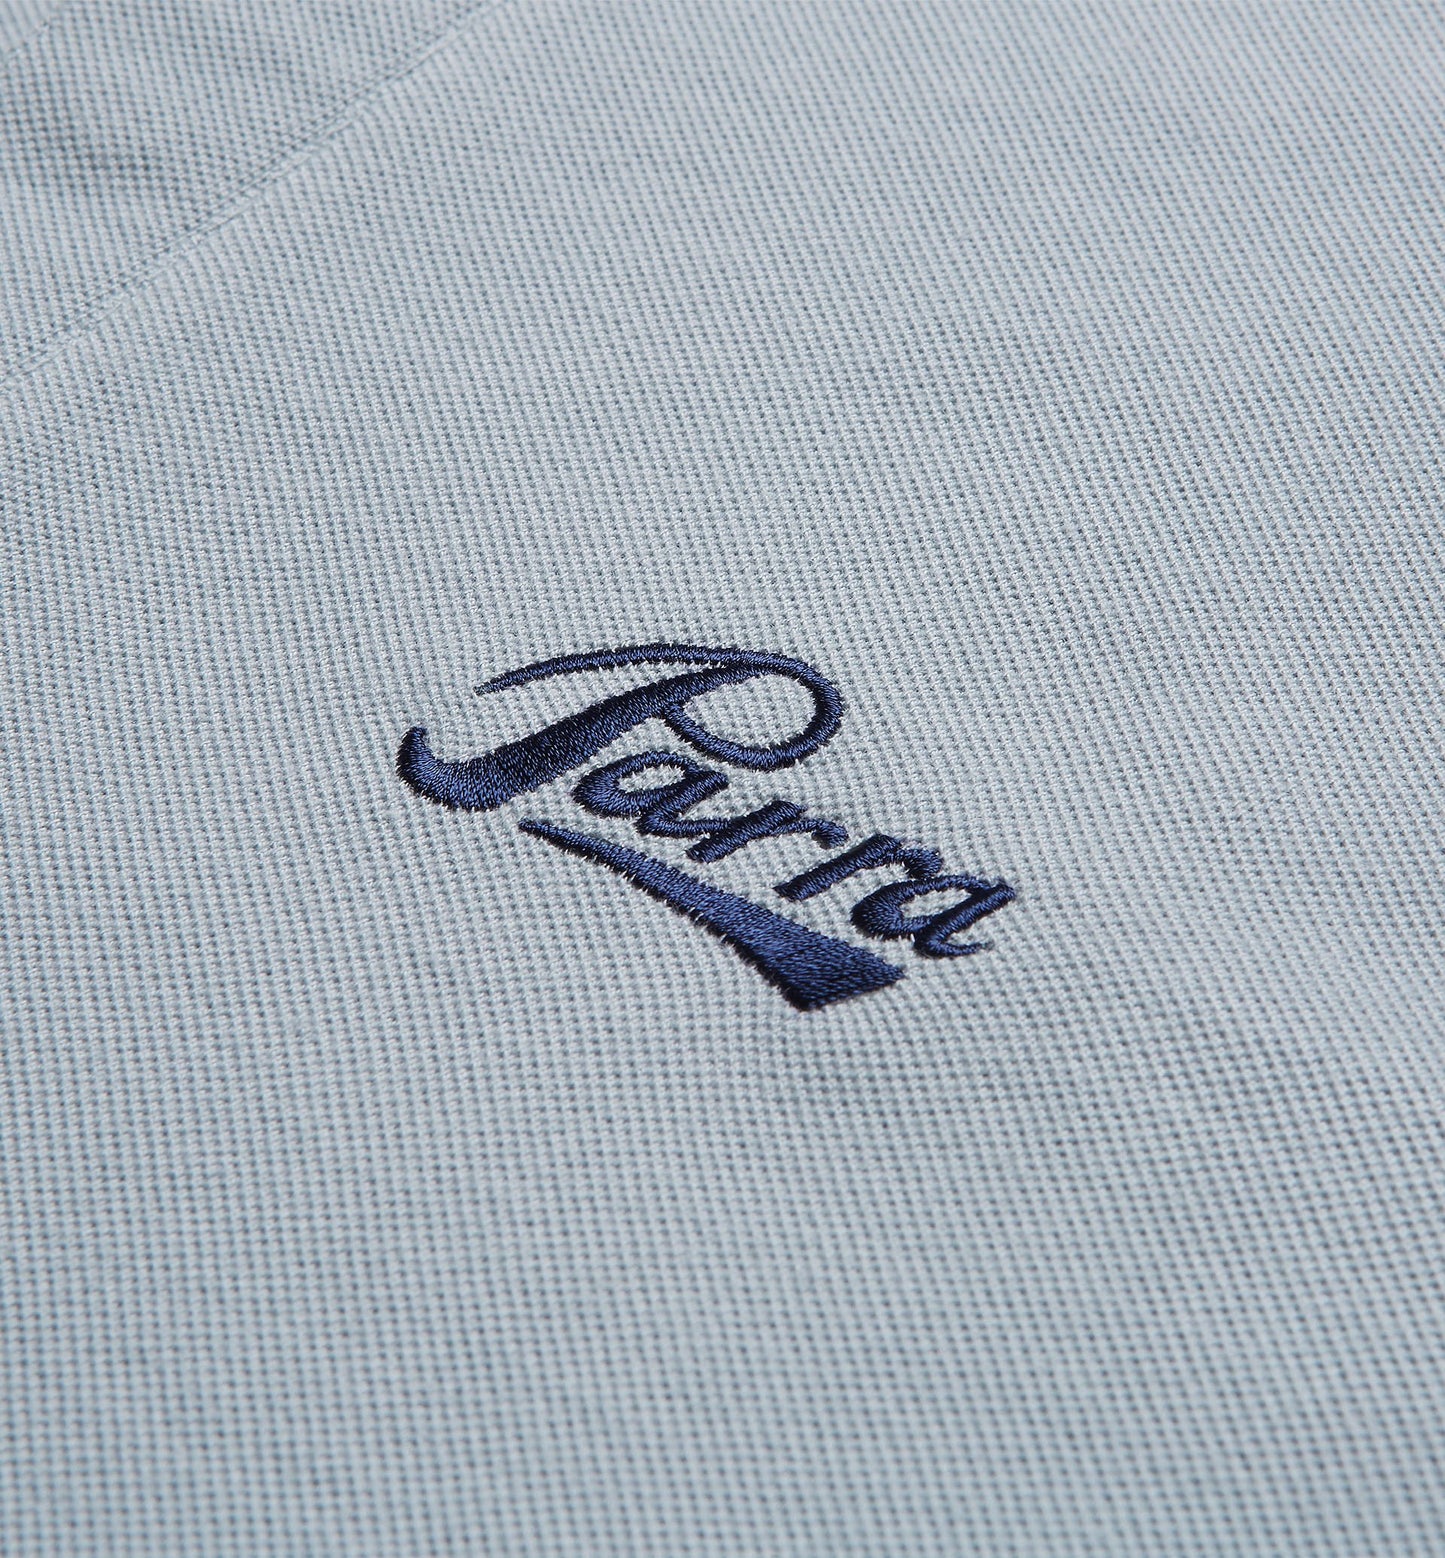 By Parra Pencil Logo Polo Shirt